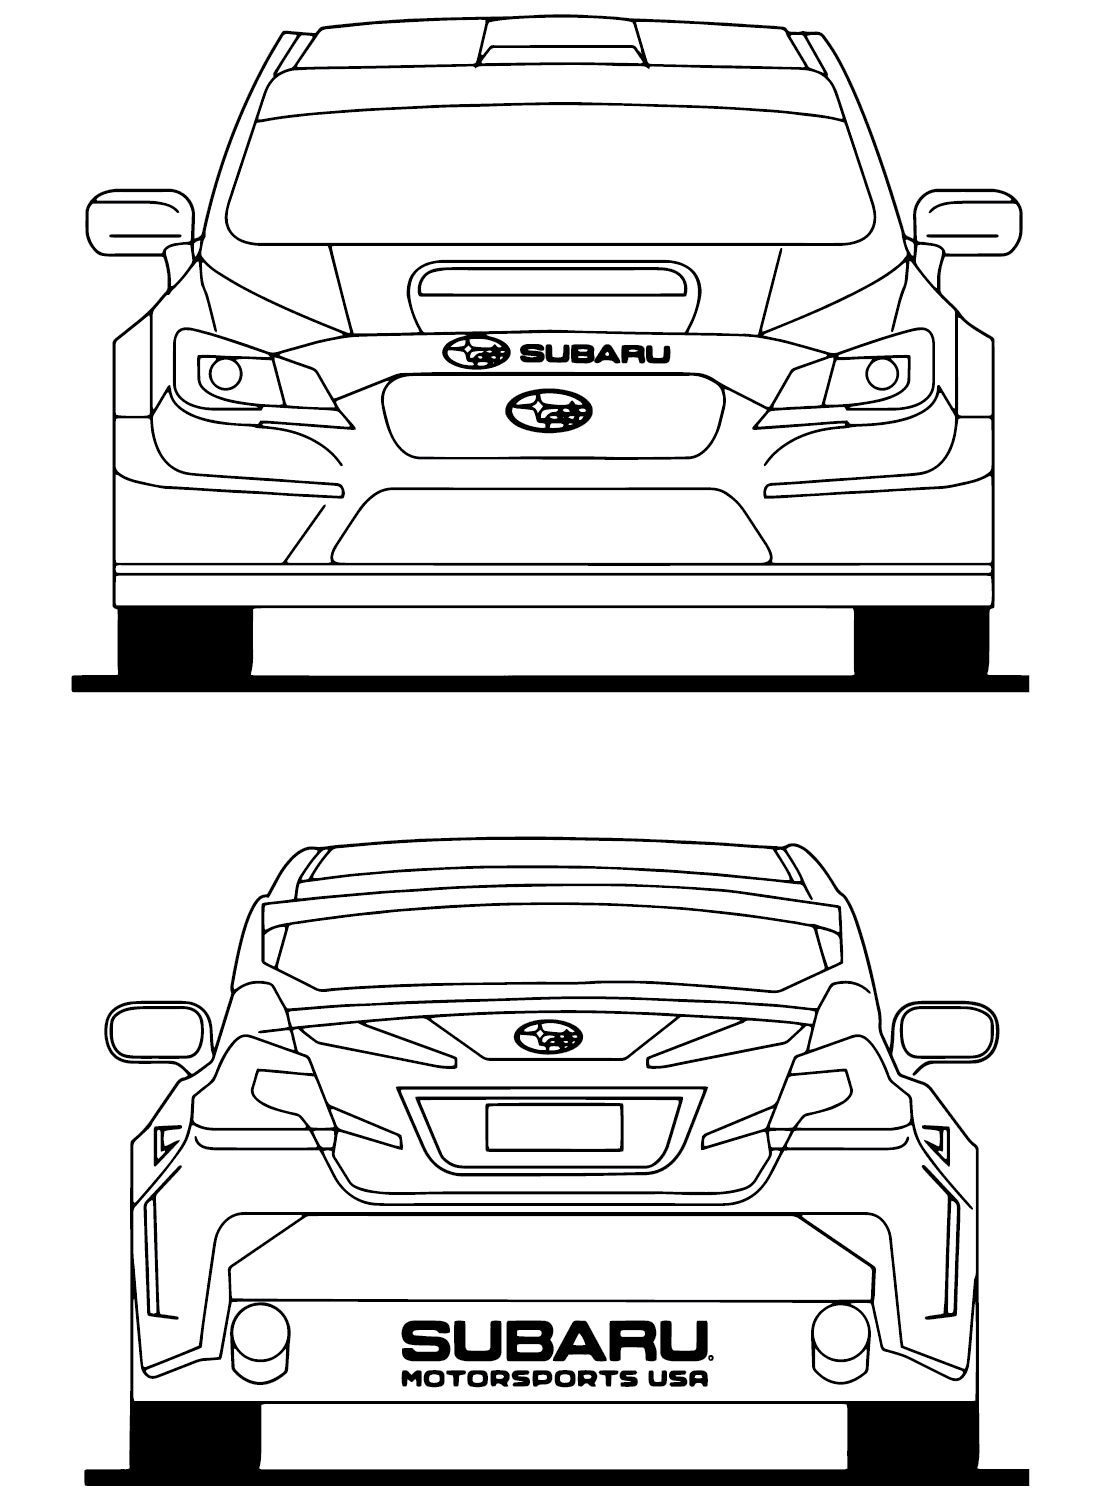 Subaru Coloring Sheet from Subaru